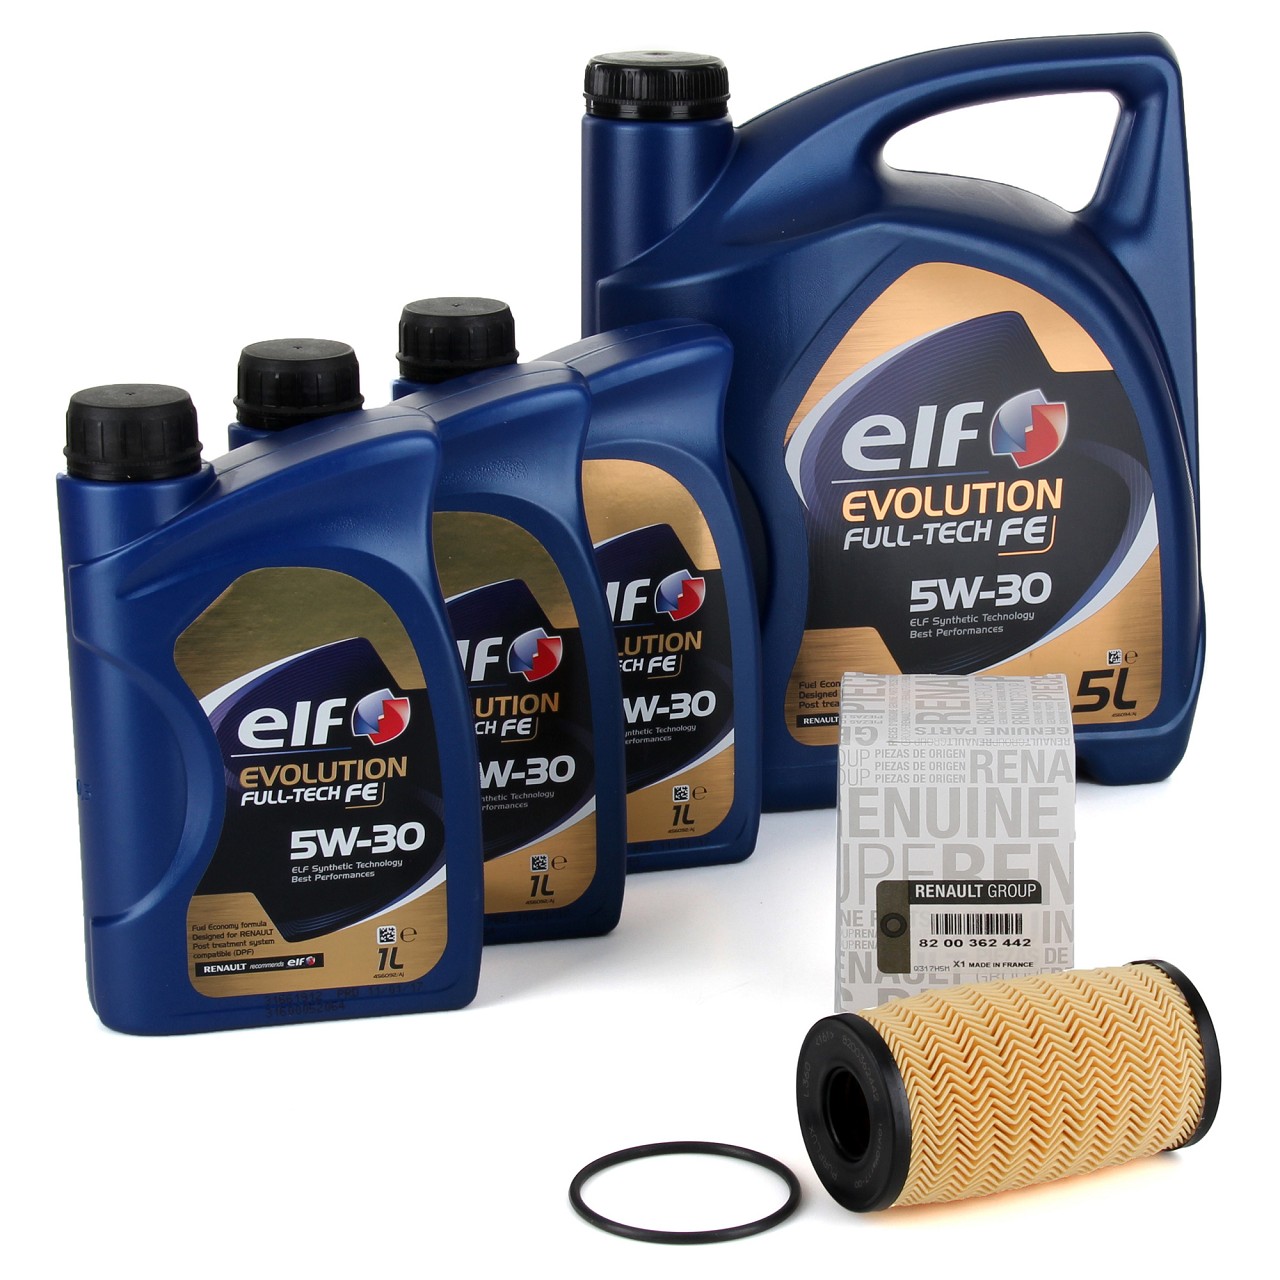 8L elf Evolution Full-Tech FE 5W-30 Motoröl ORIGINAL Renault Ölfilter 8200362442